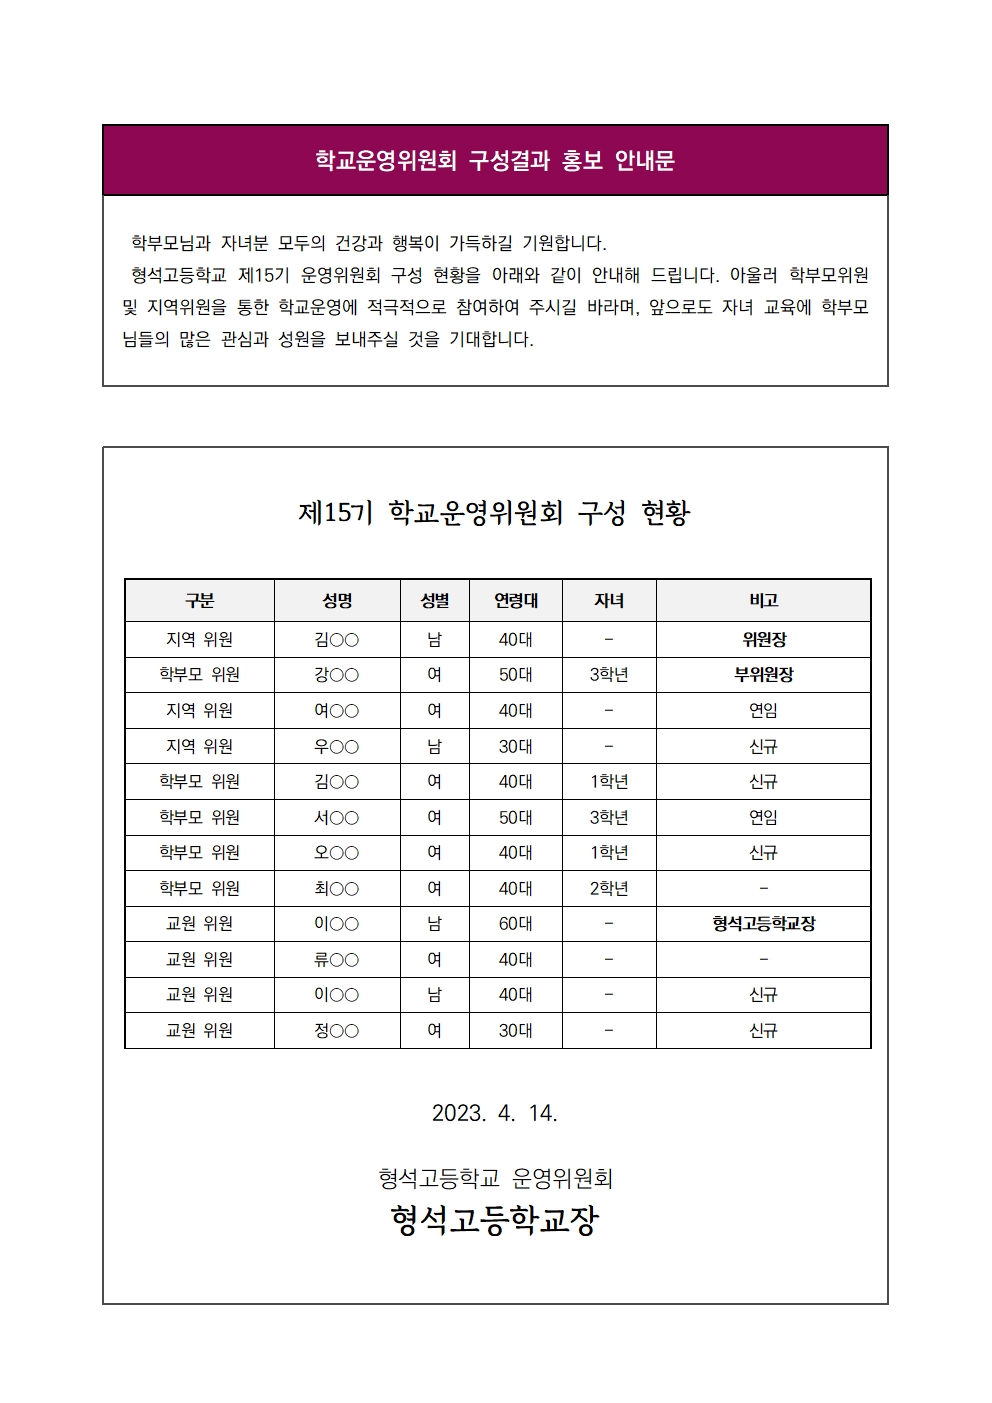 [형석고] 학교운영위원회 구성결과 홍보 안내문001